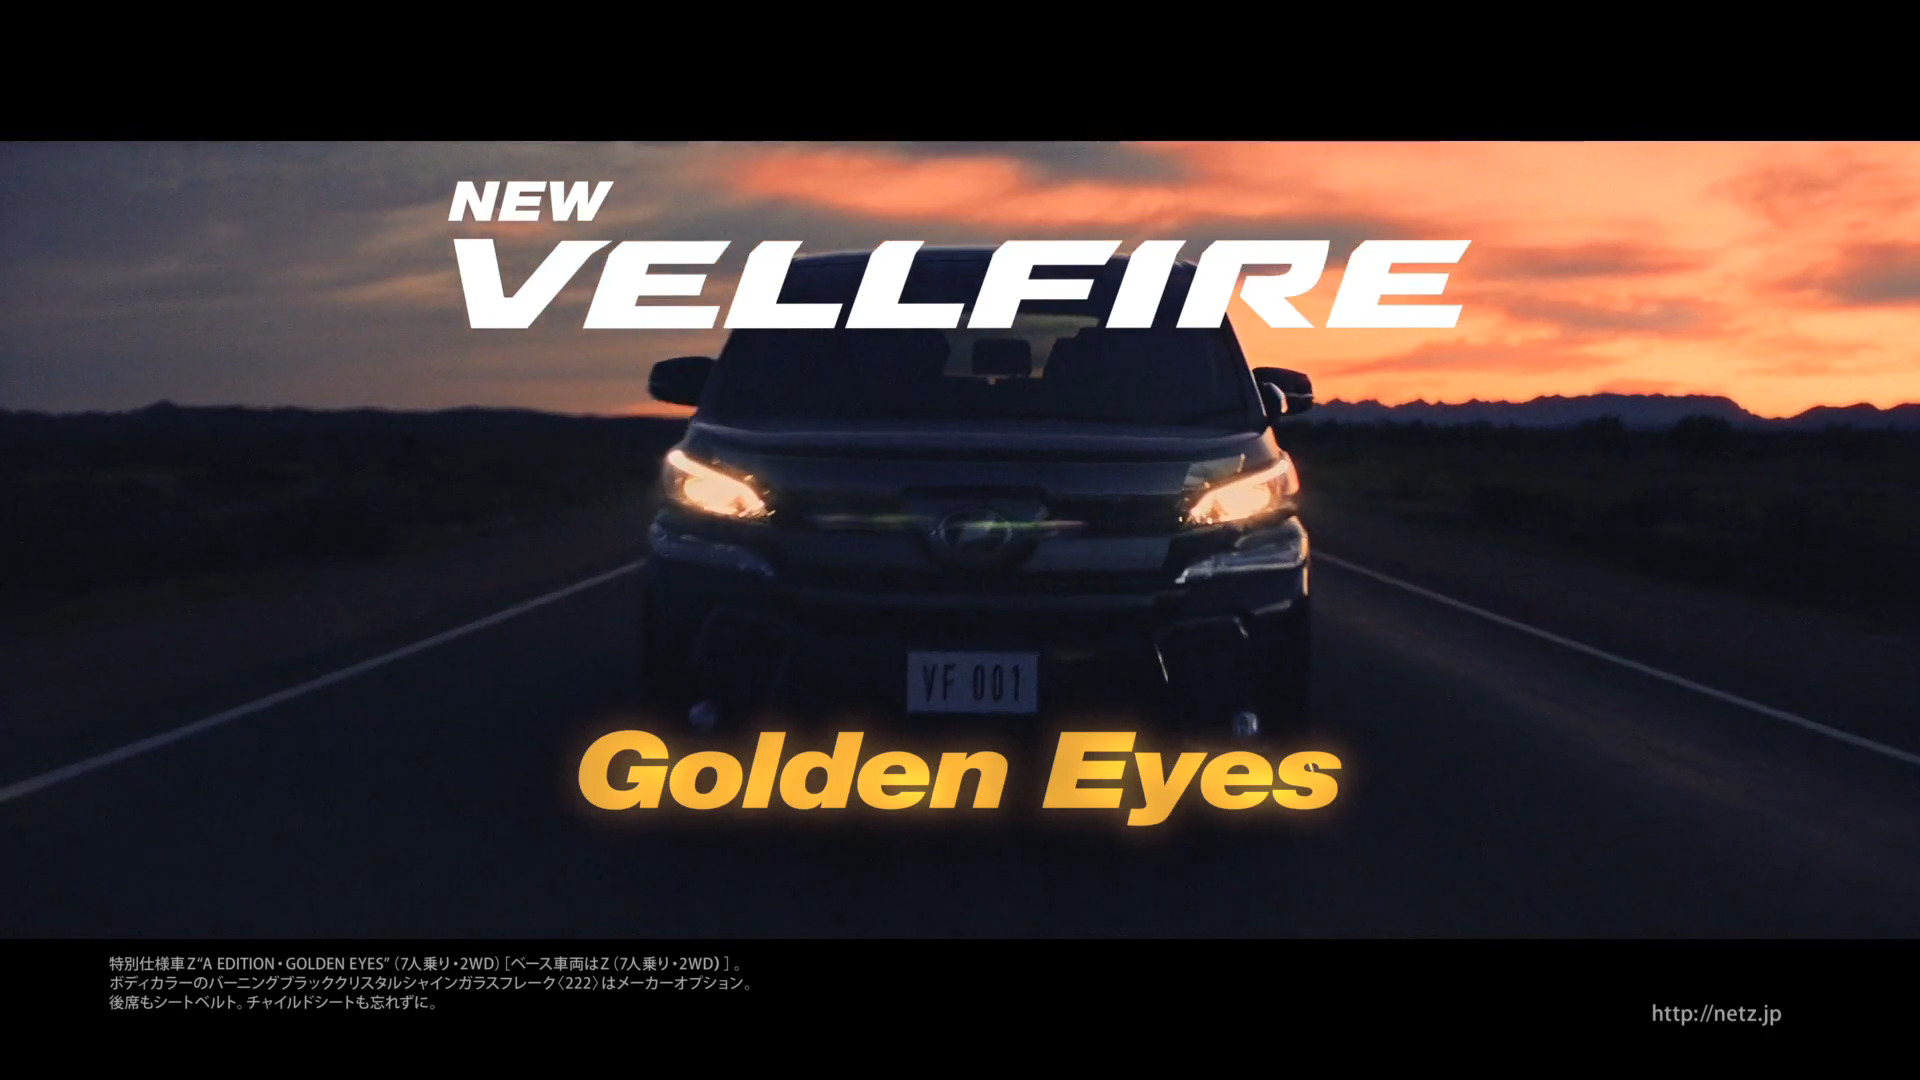 Toyota New Vellfire Golden Eyes